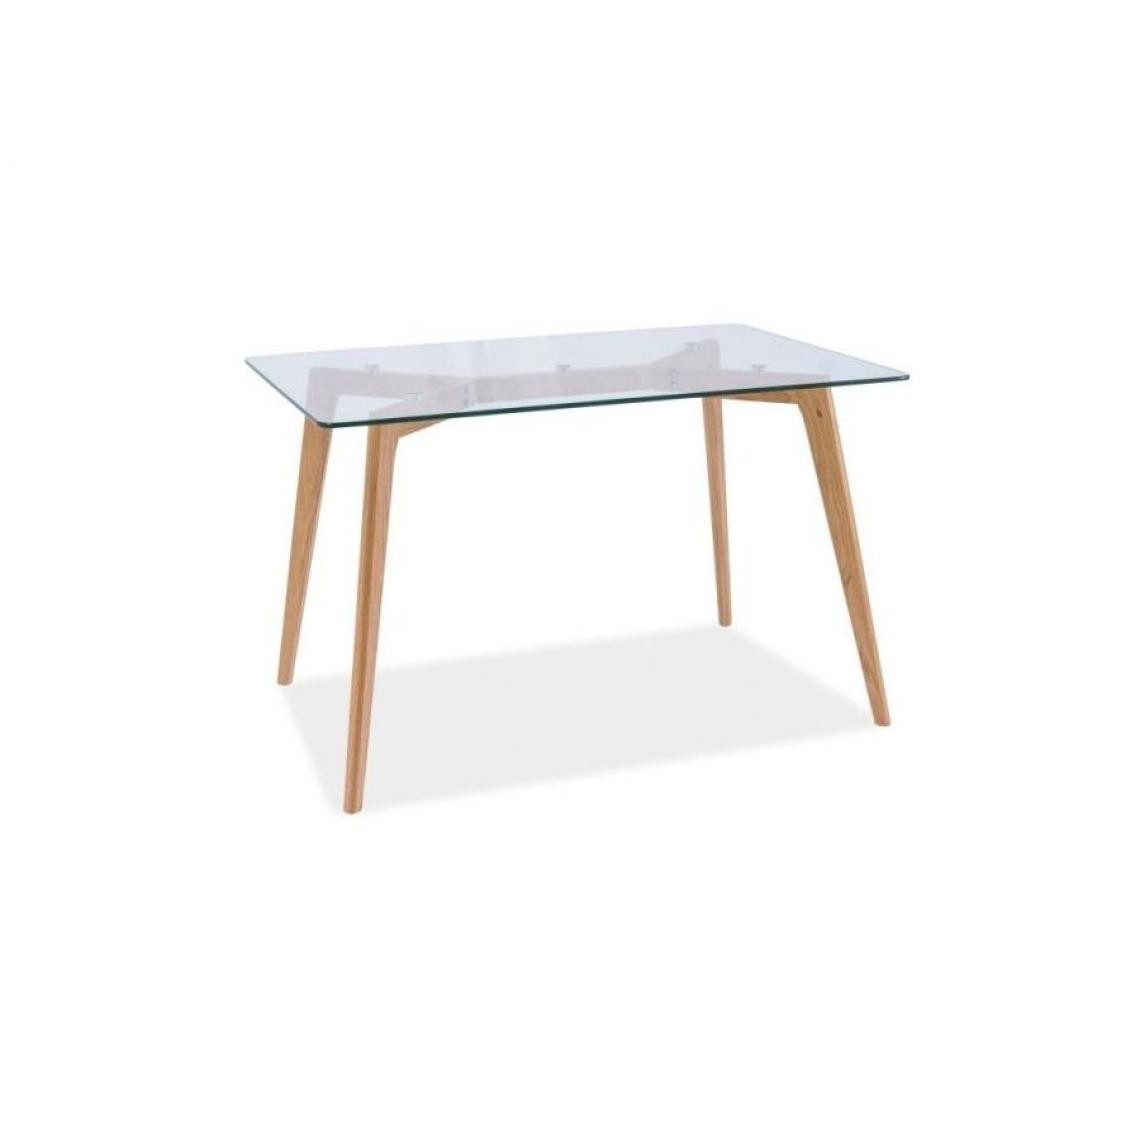 Hucoco - OSKO - Table élégante de style scandinave - 120x80x75 cm - Plateau en verre trempé - Pieds en bois naturel - Chêne - Tables à manger